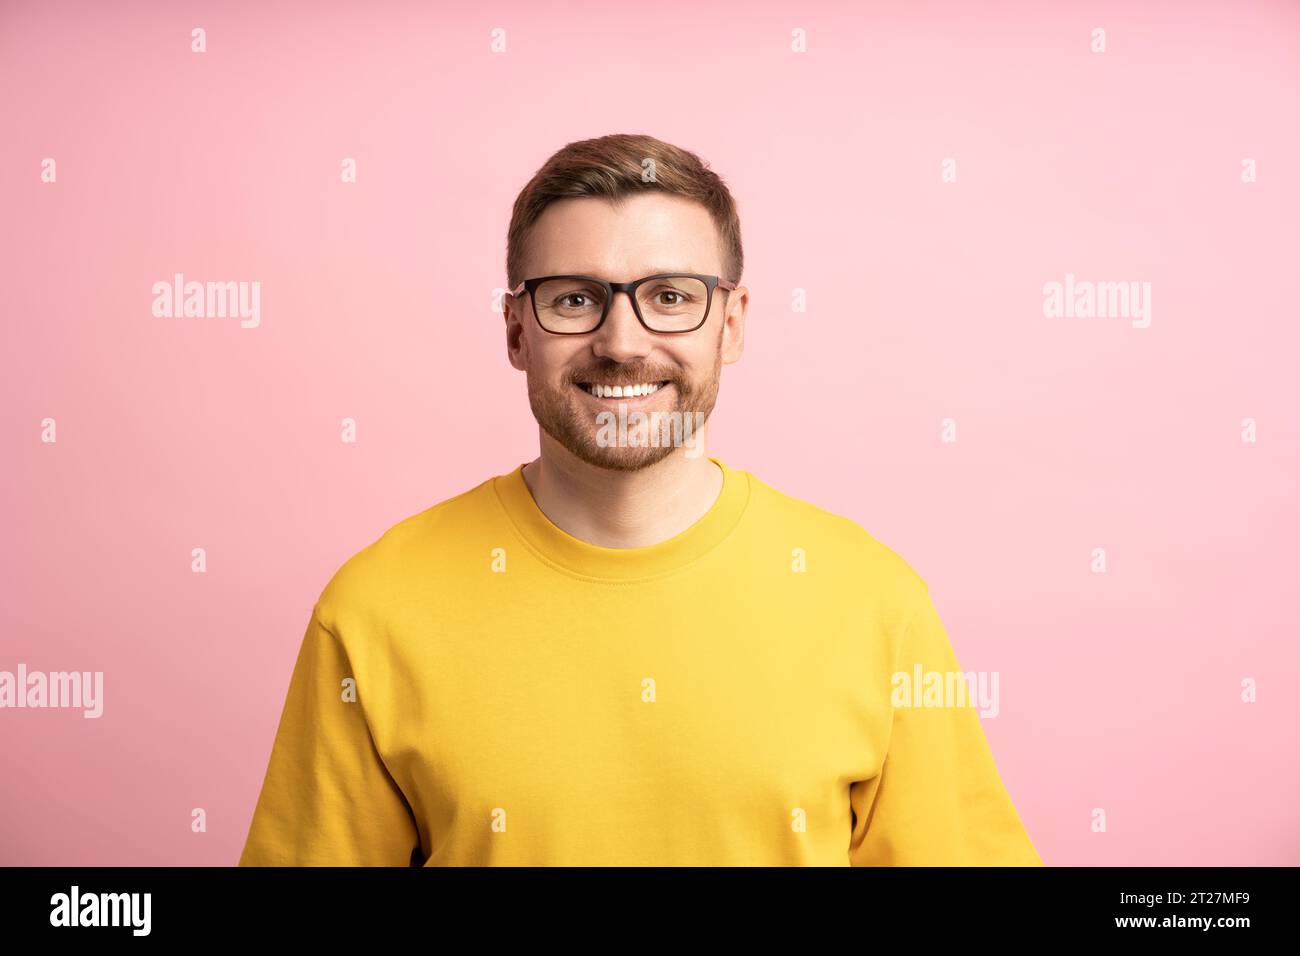 Uomo contento sorridente, ritratto su una parete da studio rosa. Un ragazzo istruito e professionale intelligente guarda la fotocamera Foto Stock